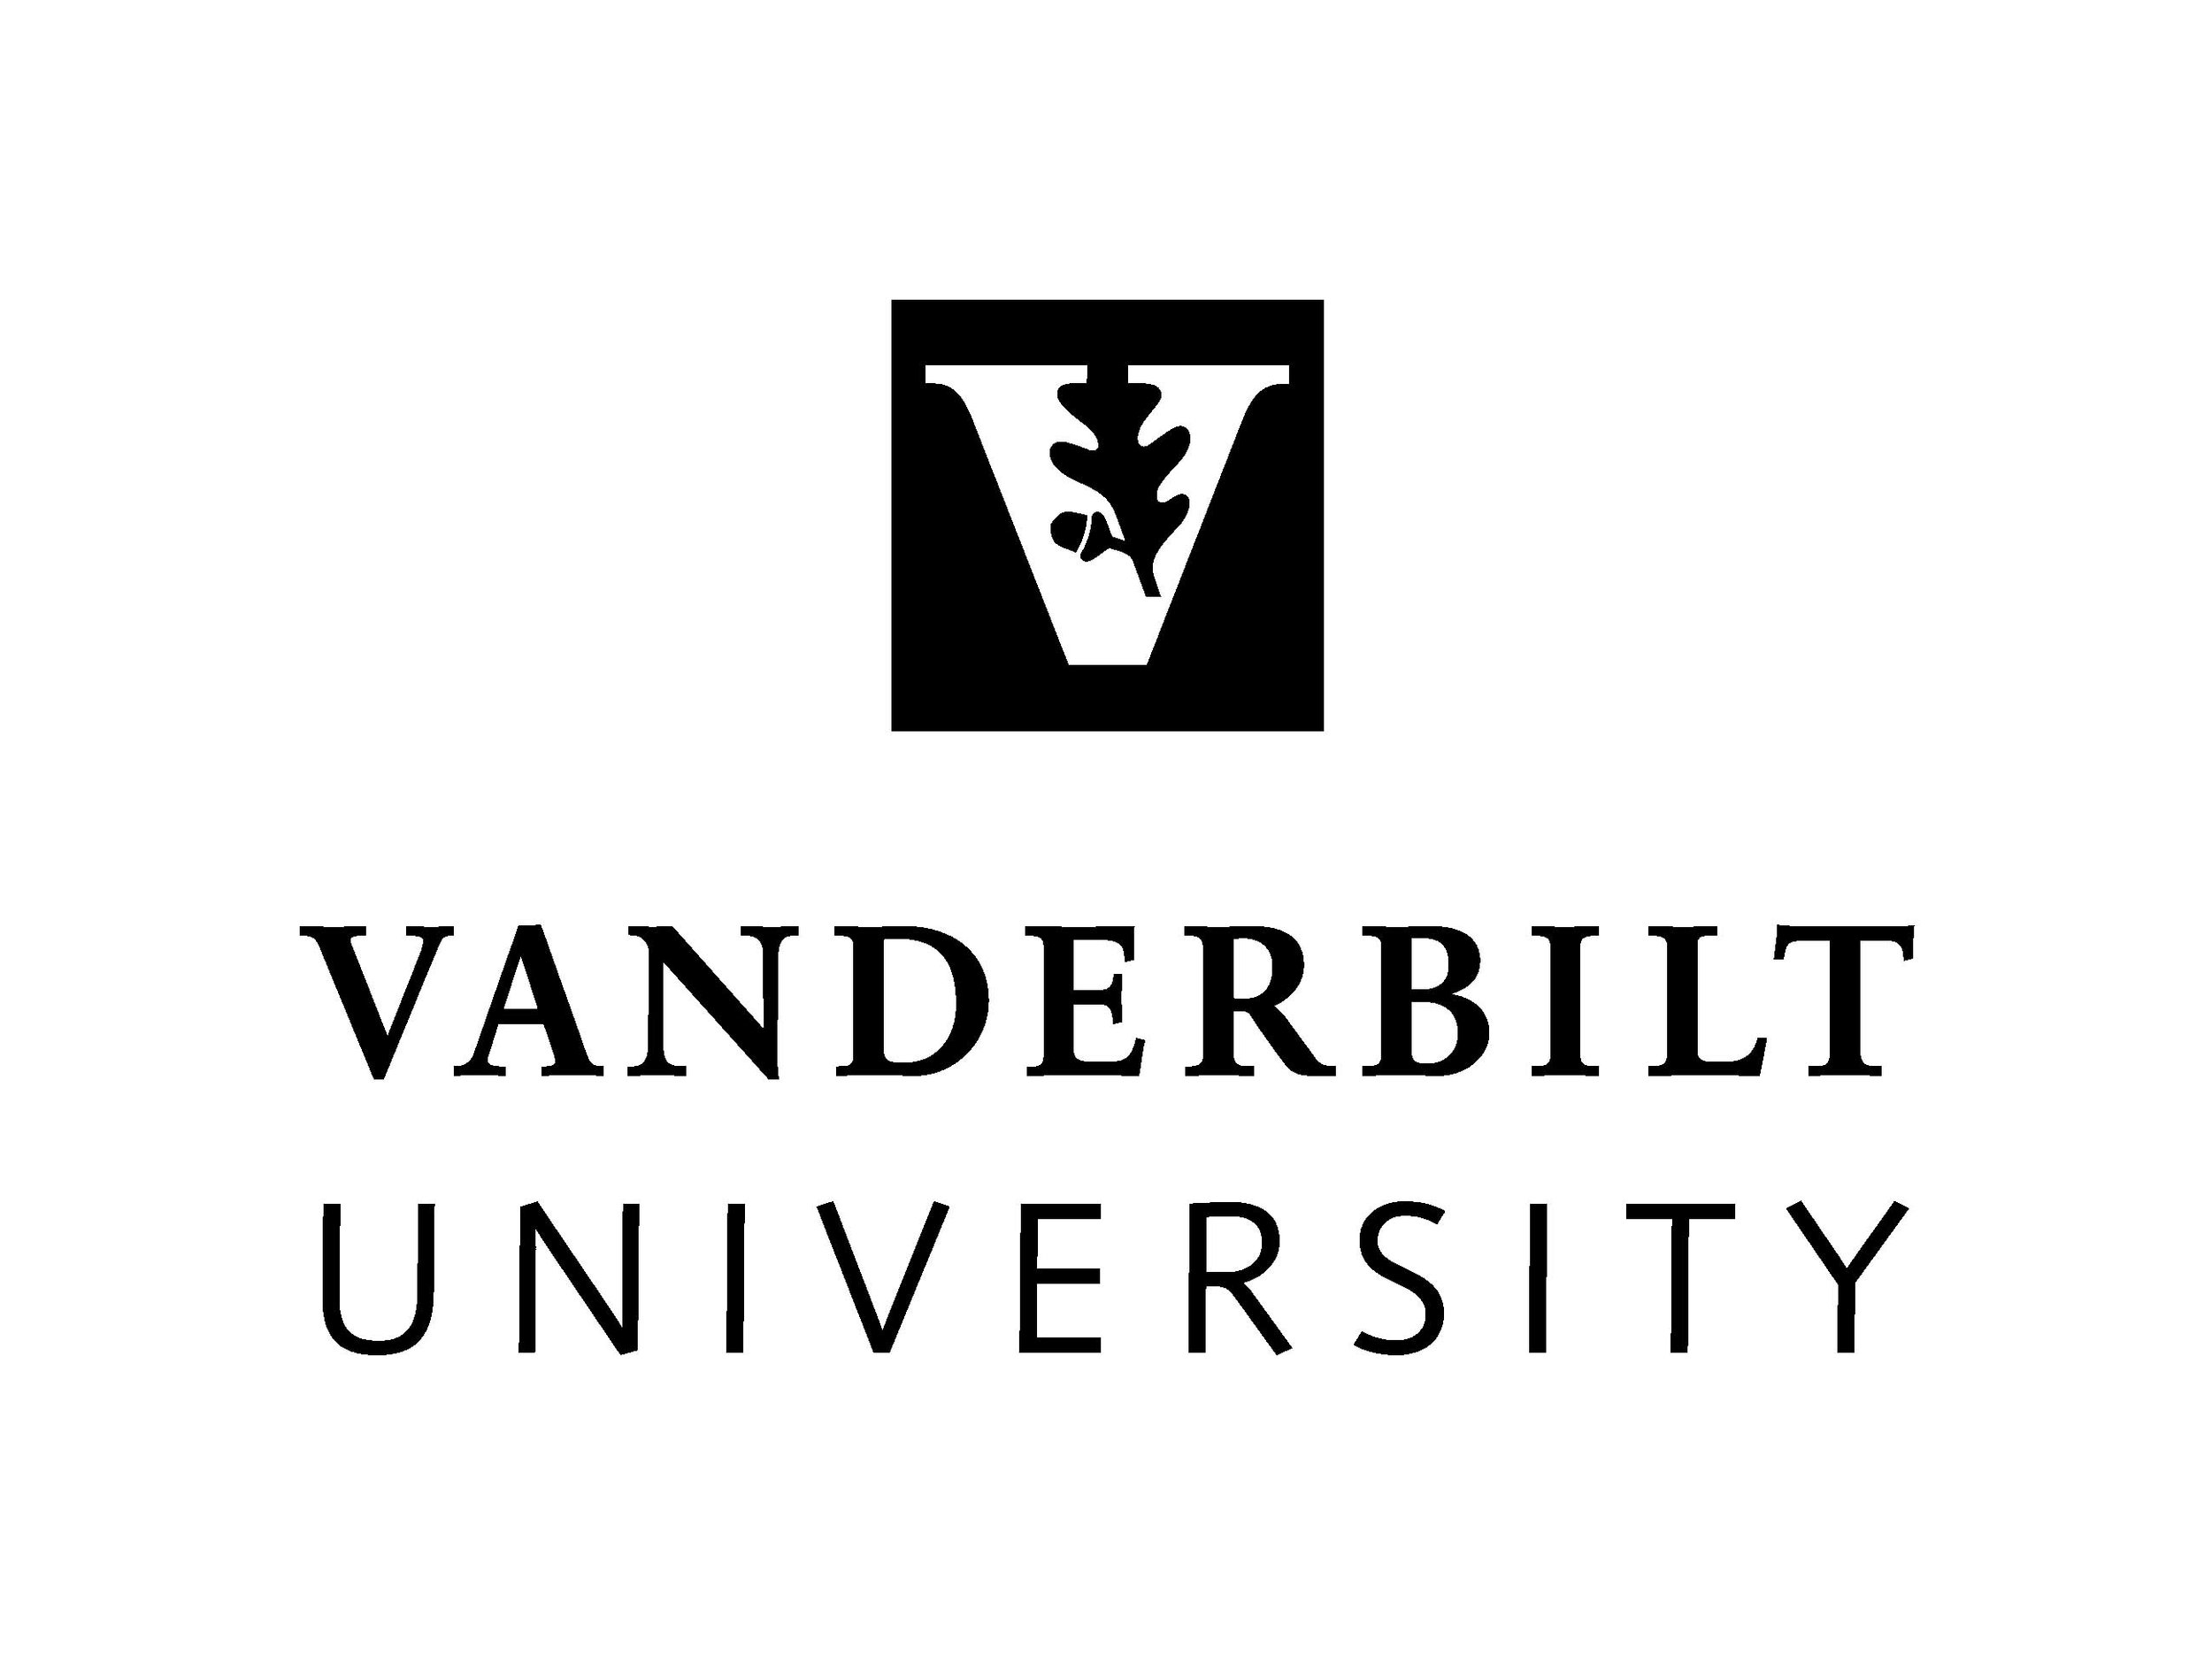 Vandernilt University logo.jpg